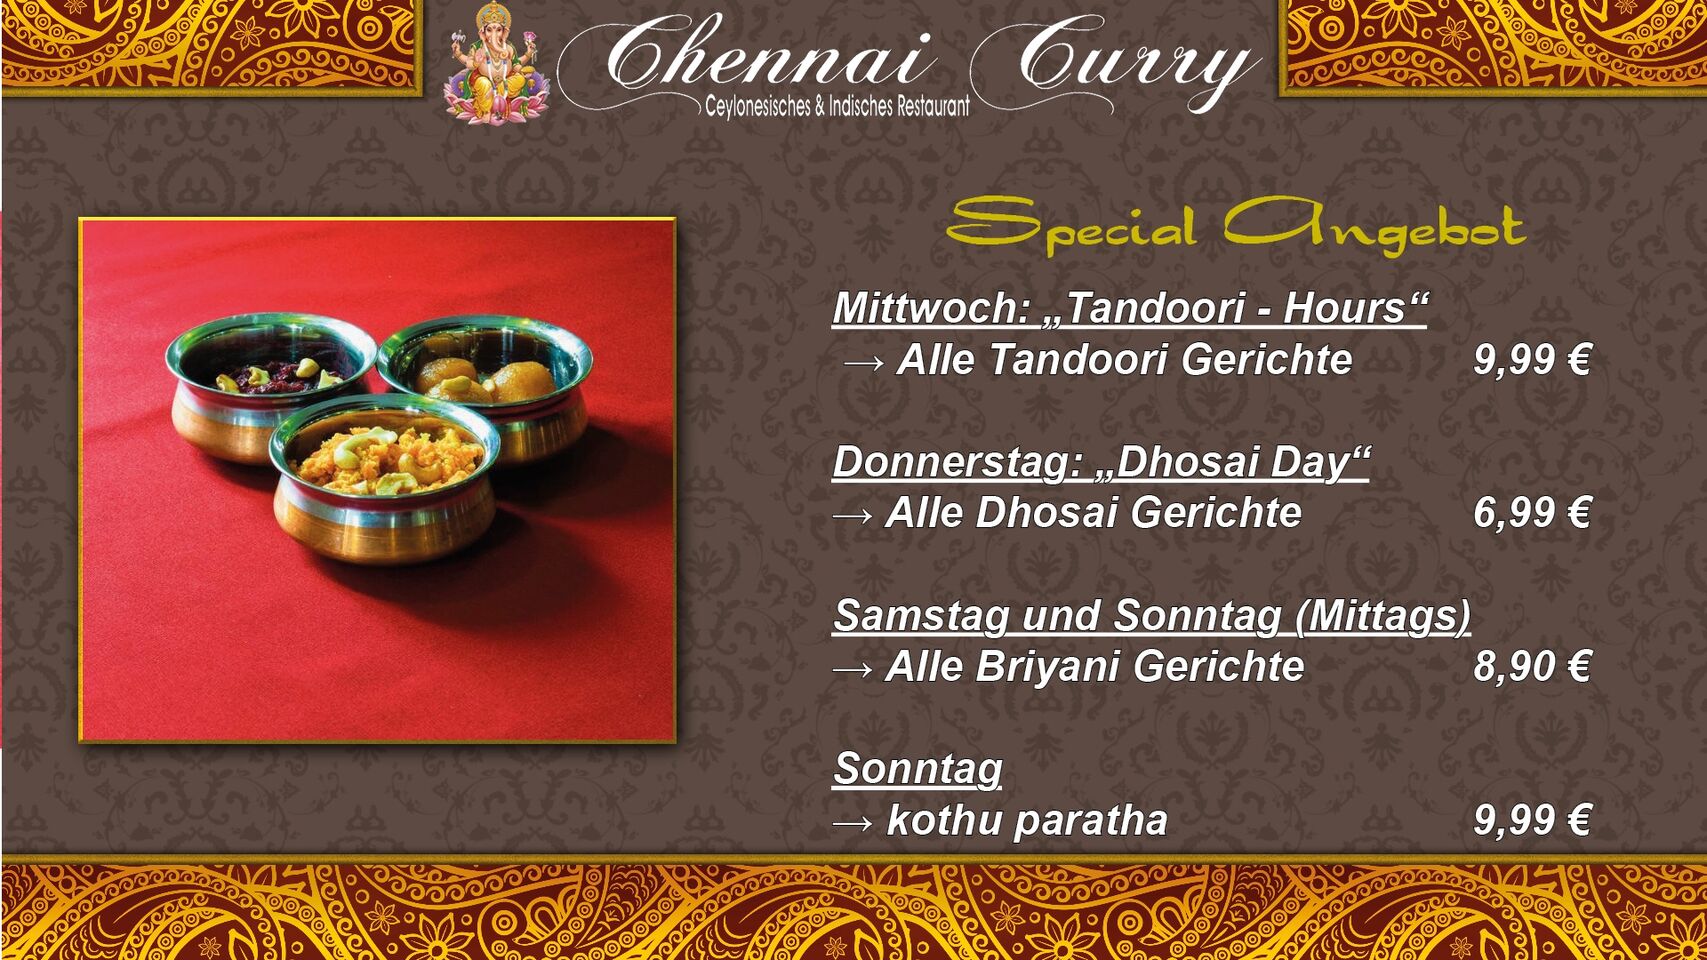 A photo of Chennai Curry